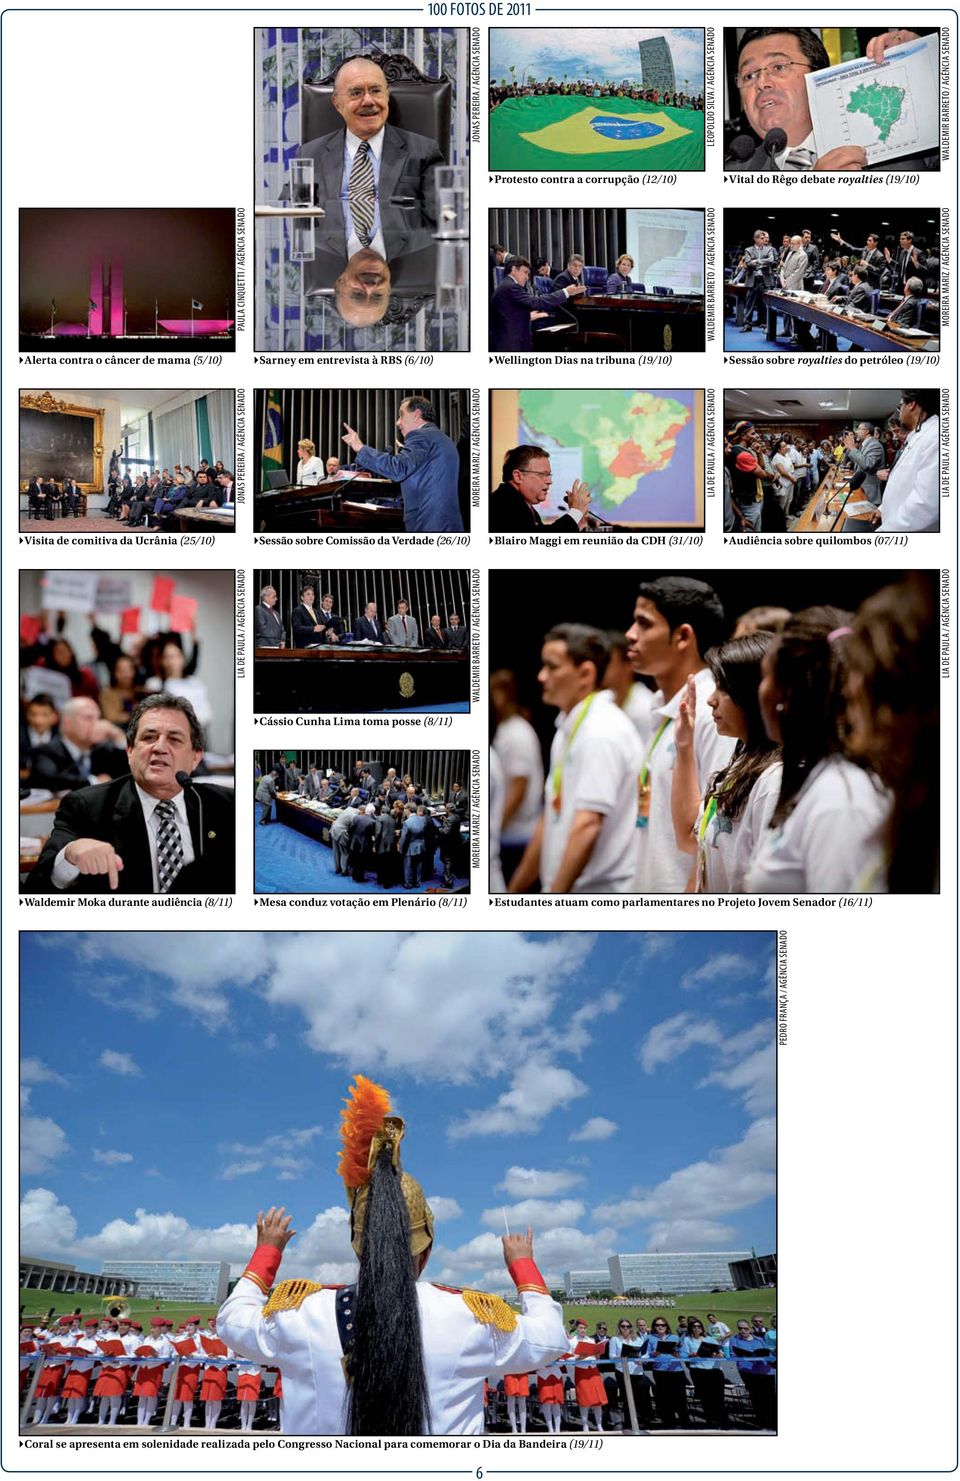 (07/11) `Cássio Cunha Lima toma posse (8/11) `Waldemir Moka durante audiência (8/11) `Mesa conduz votação em Plenário (8/11) `Estudantes atuam como parlamentares no Projeto Jovem